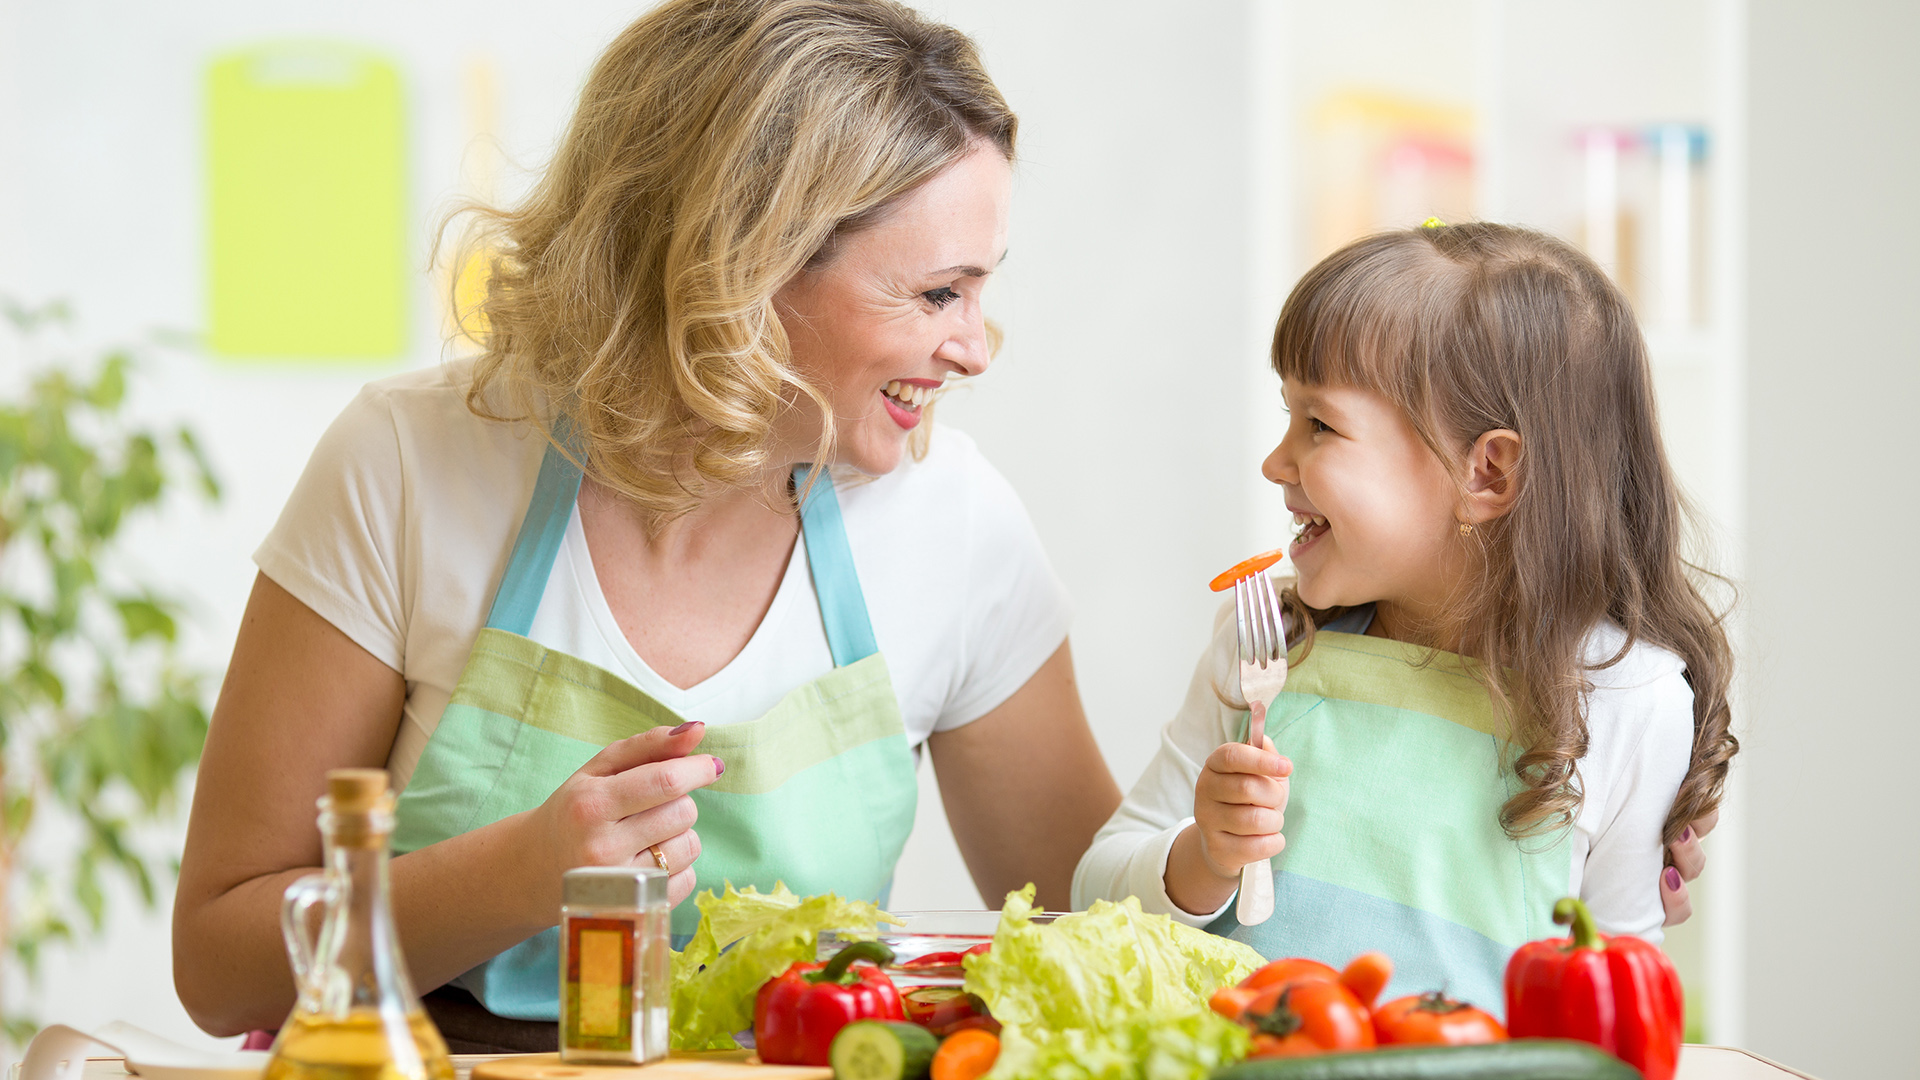 El consumo de alimentos nutritivos, empezando por las frutas y verduras debe  fomentarse desde la infancia (Shutterstock)